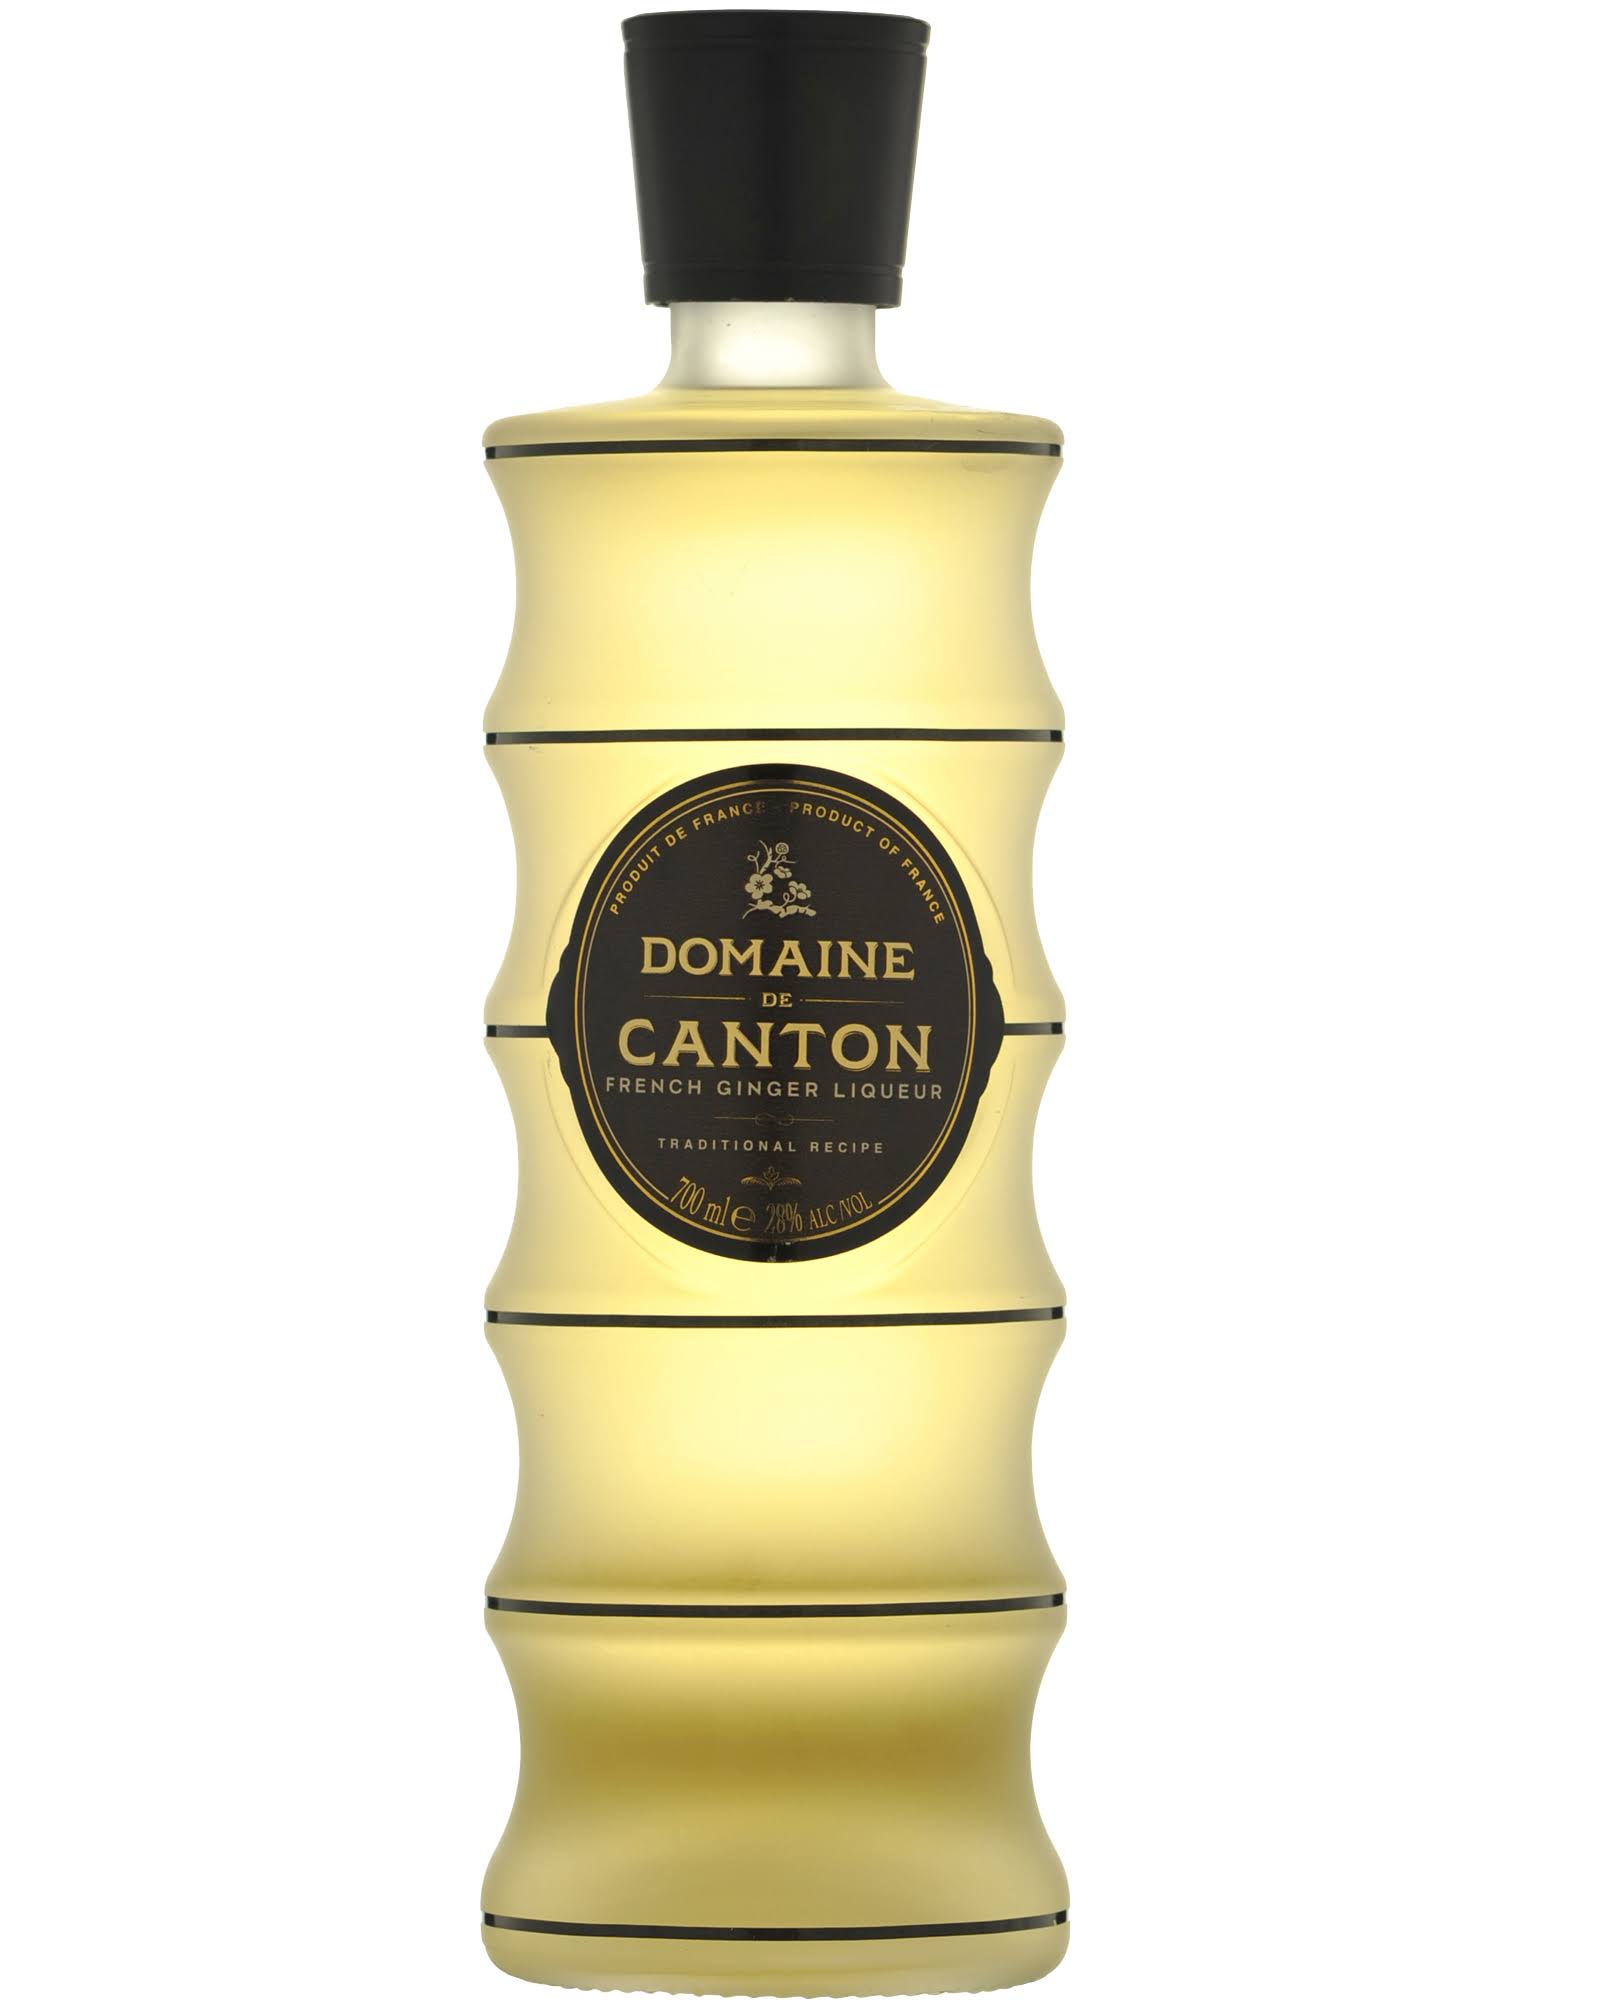 Domaine De Canton Ginger Liqueur 750 mL bottle